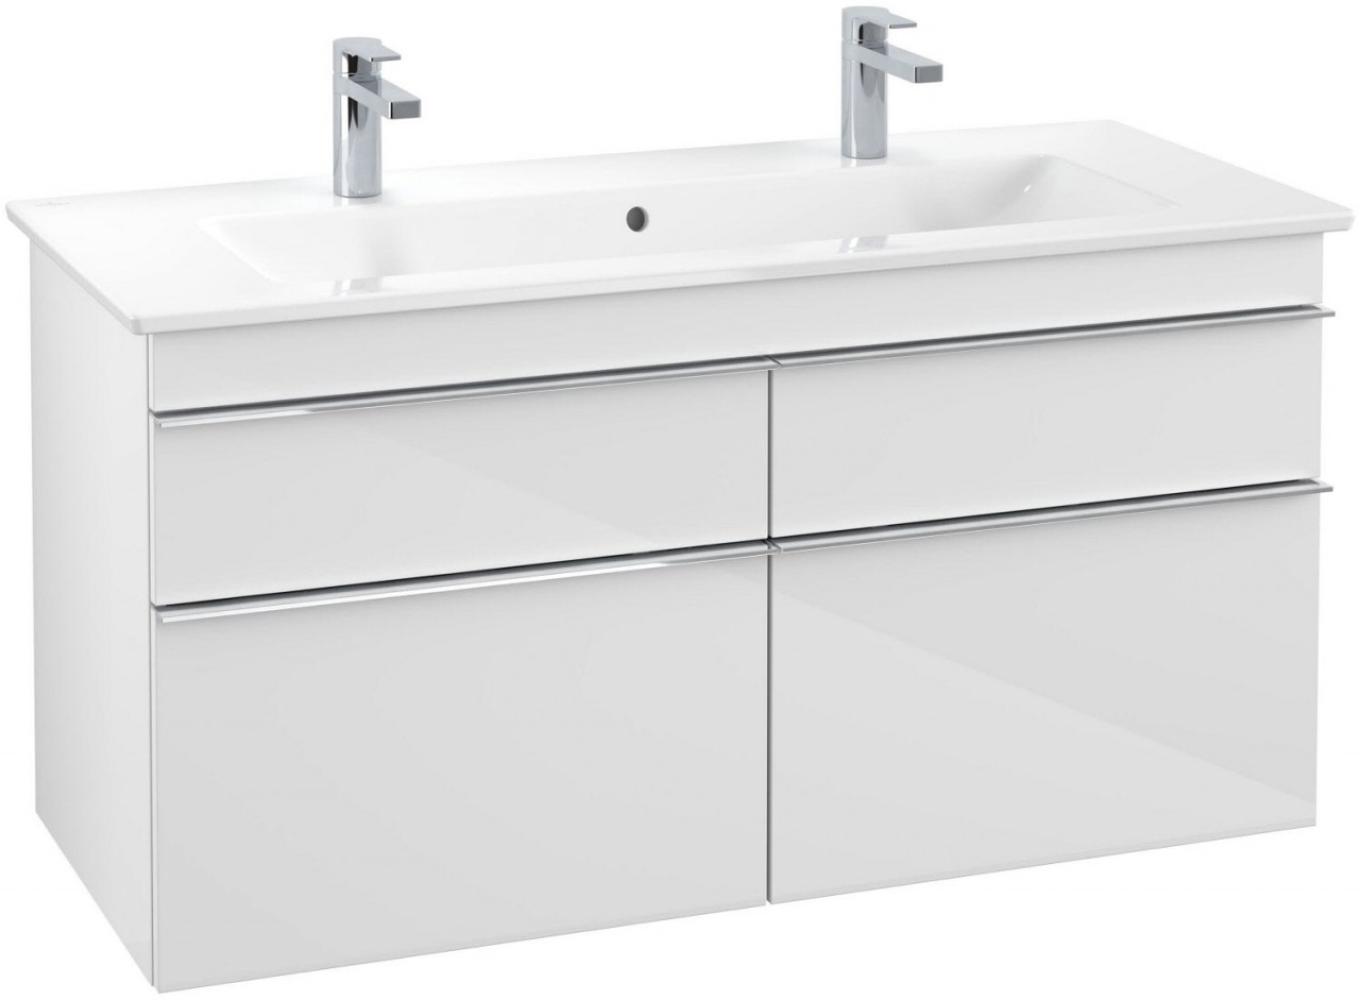 Villeroy & Boch VENTICELLO Waschtischunterschrank 115 cm breit, Weiß, Griff Chrom Bild 1